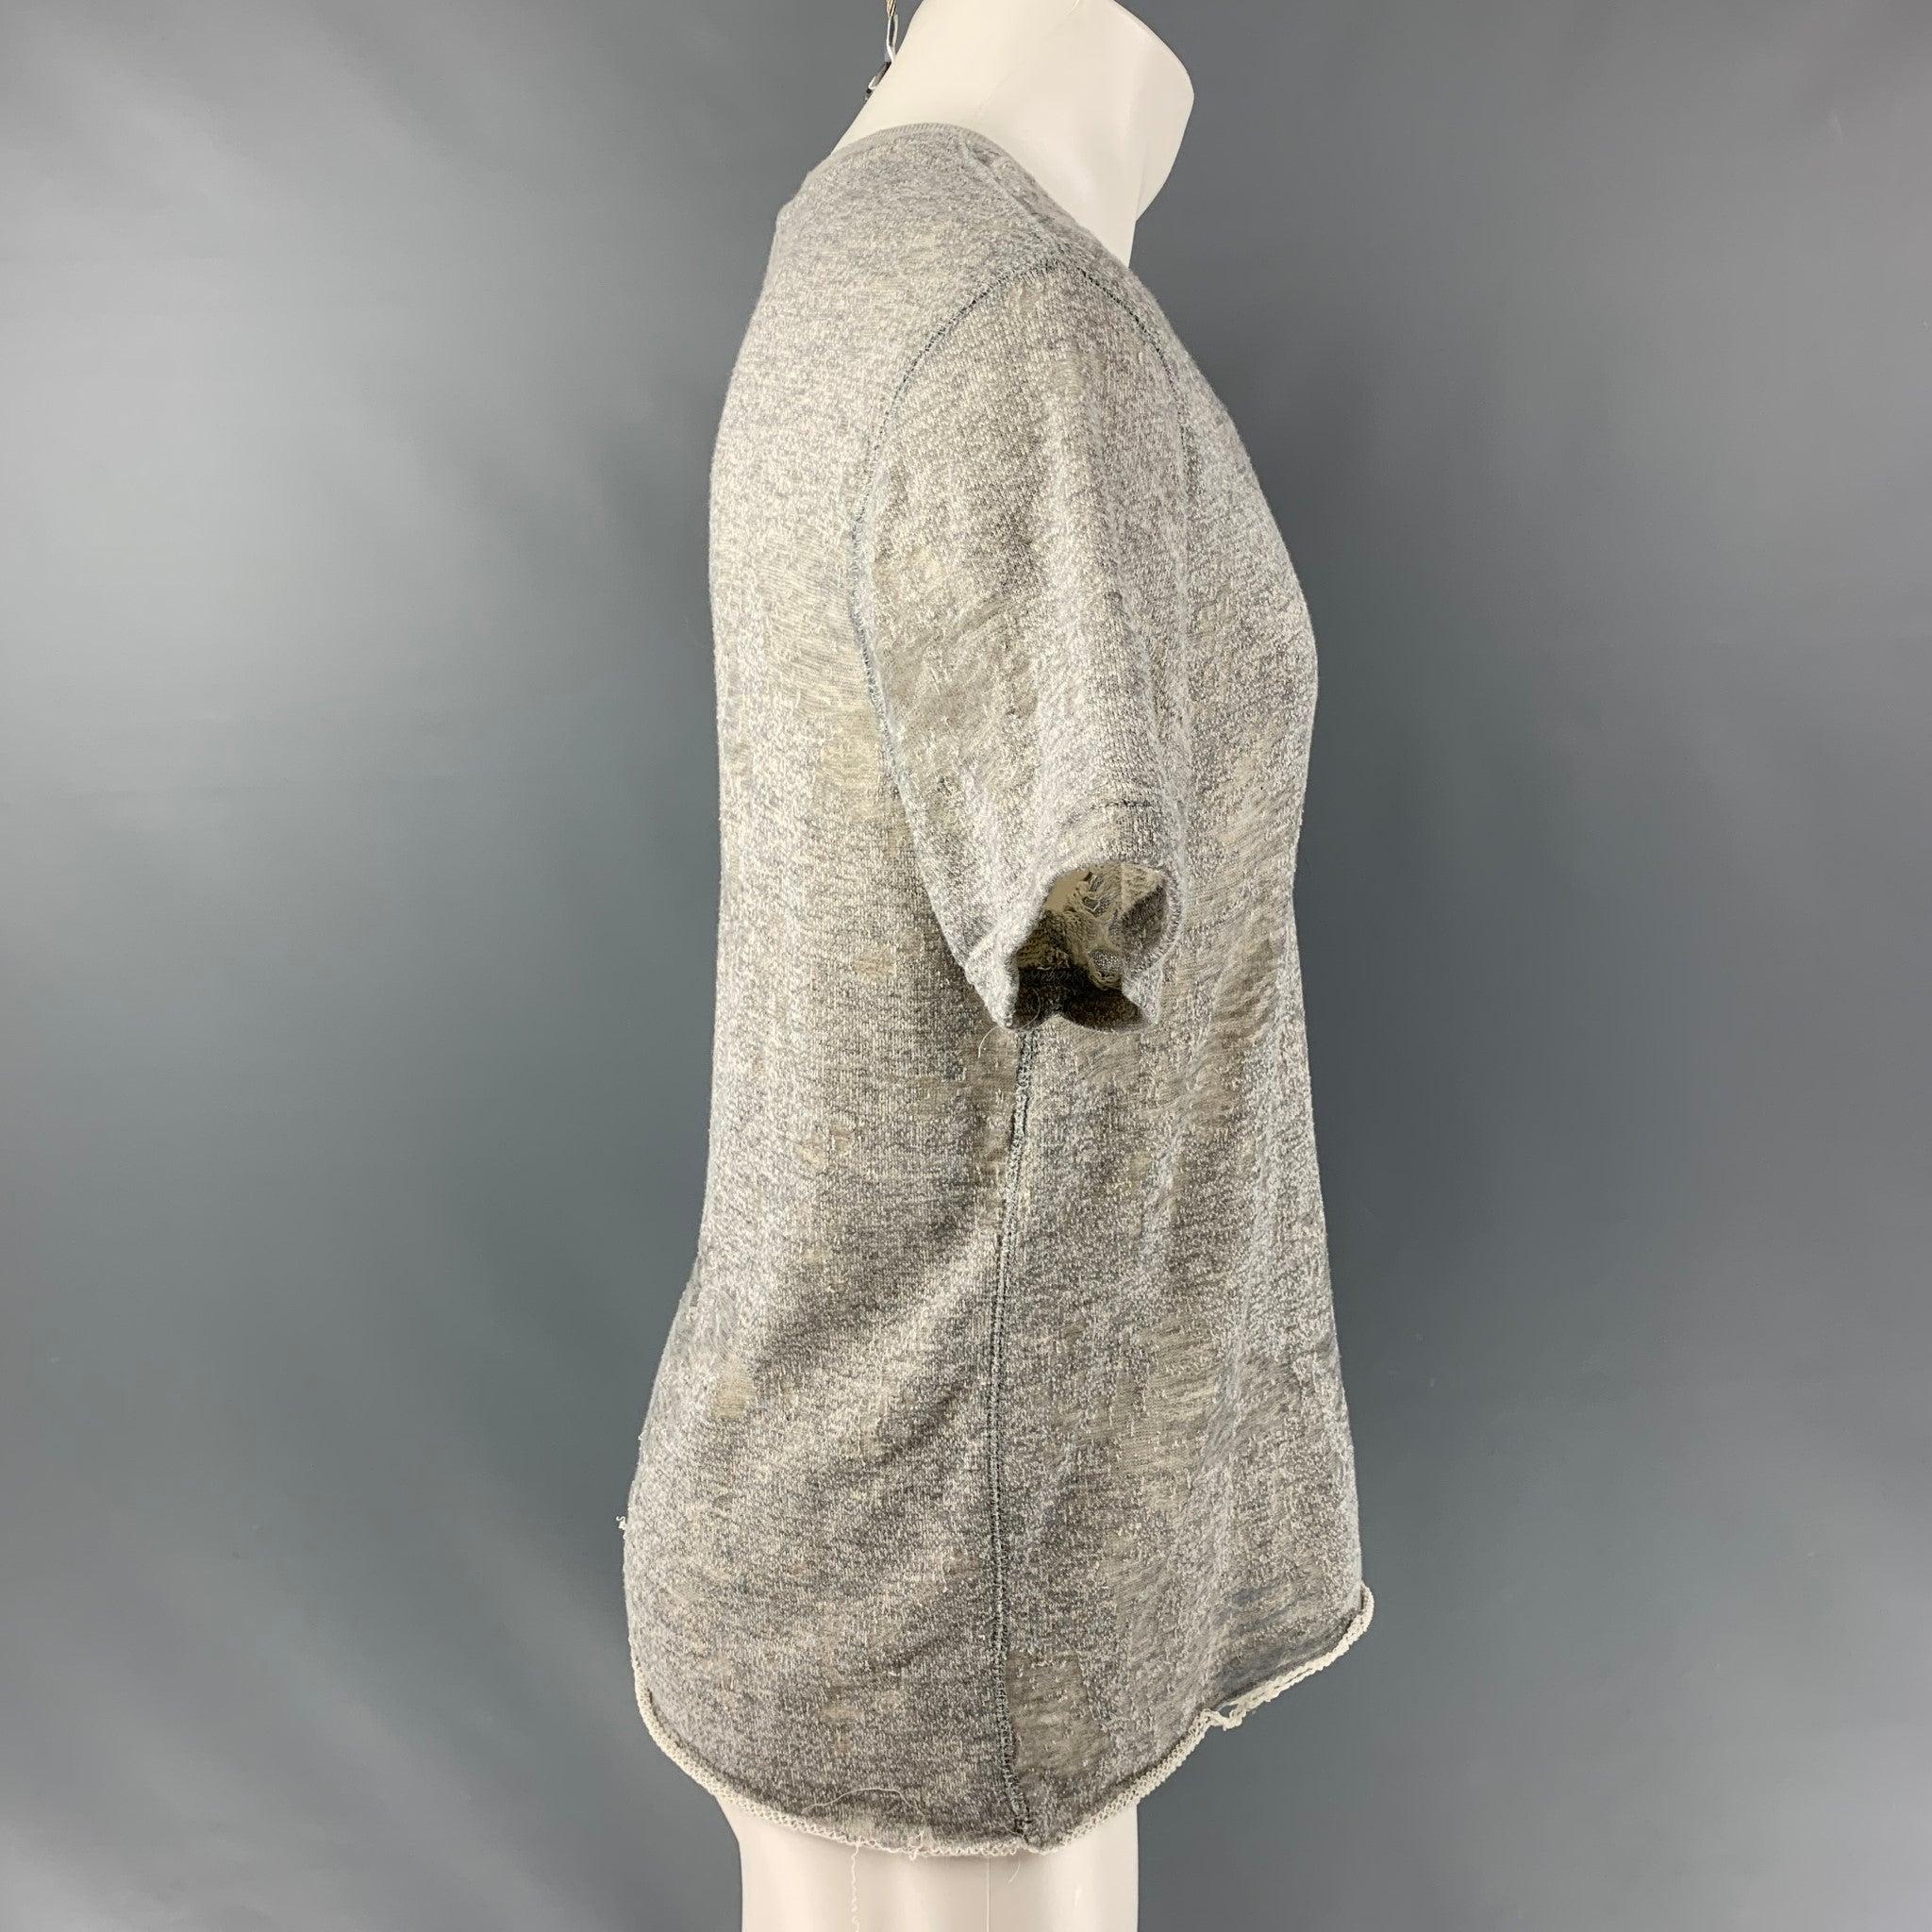 Das IRO JEANS Gaetane T-Shirt ist aus grauem, teilweise durchsichtigem Baumwollmischjersey gefertigt und verfügt über einen Rundhalsausschnitt und einen Used-Look. Ausgezeichneter Pre-Owned Zustand.  

Markiert:  S 

Abmessungen: 
 
Schultern: 20